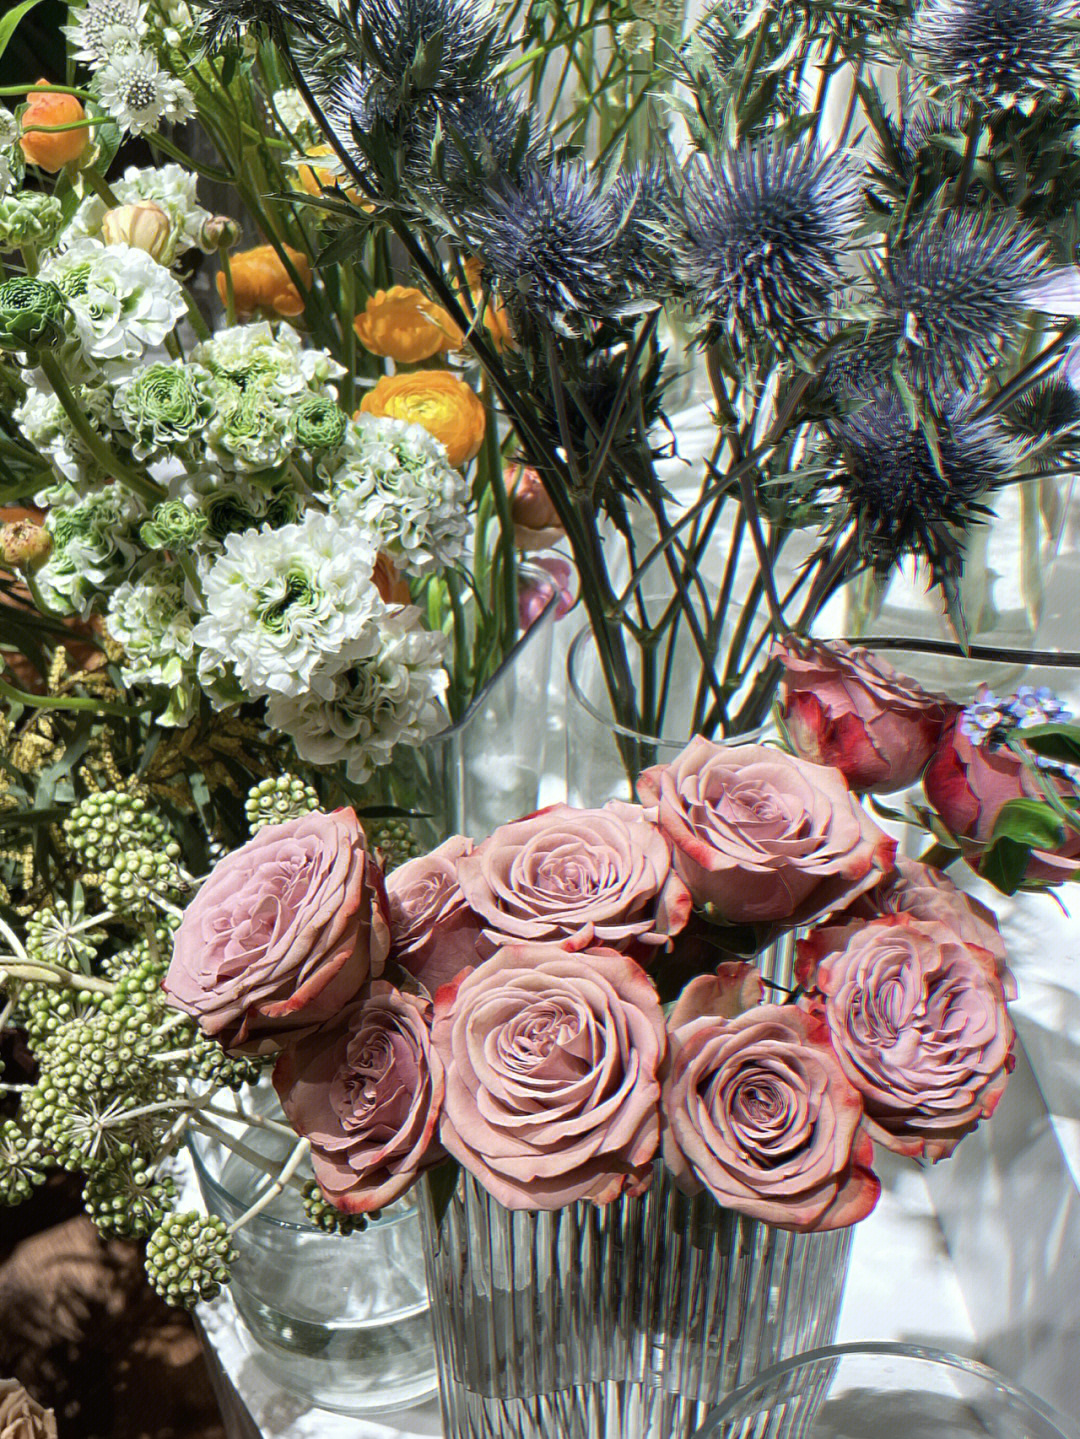 卡布奇诺玫瑰的花语是温柔的爱,不期而遇和十分喜爱,卡布奇诺花的颜色